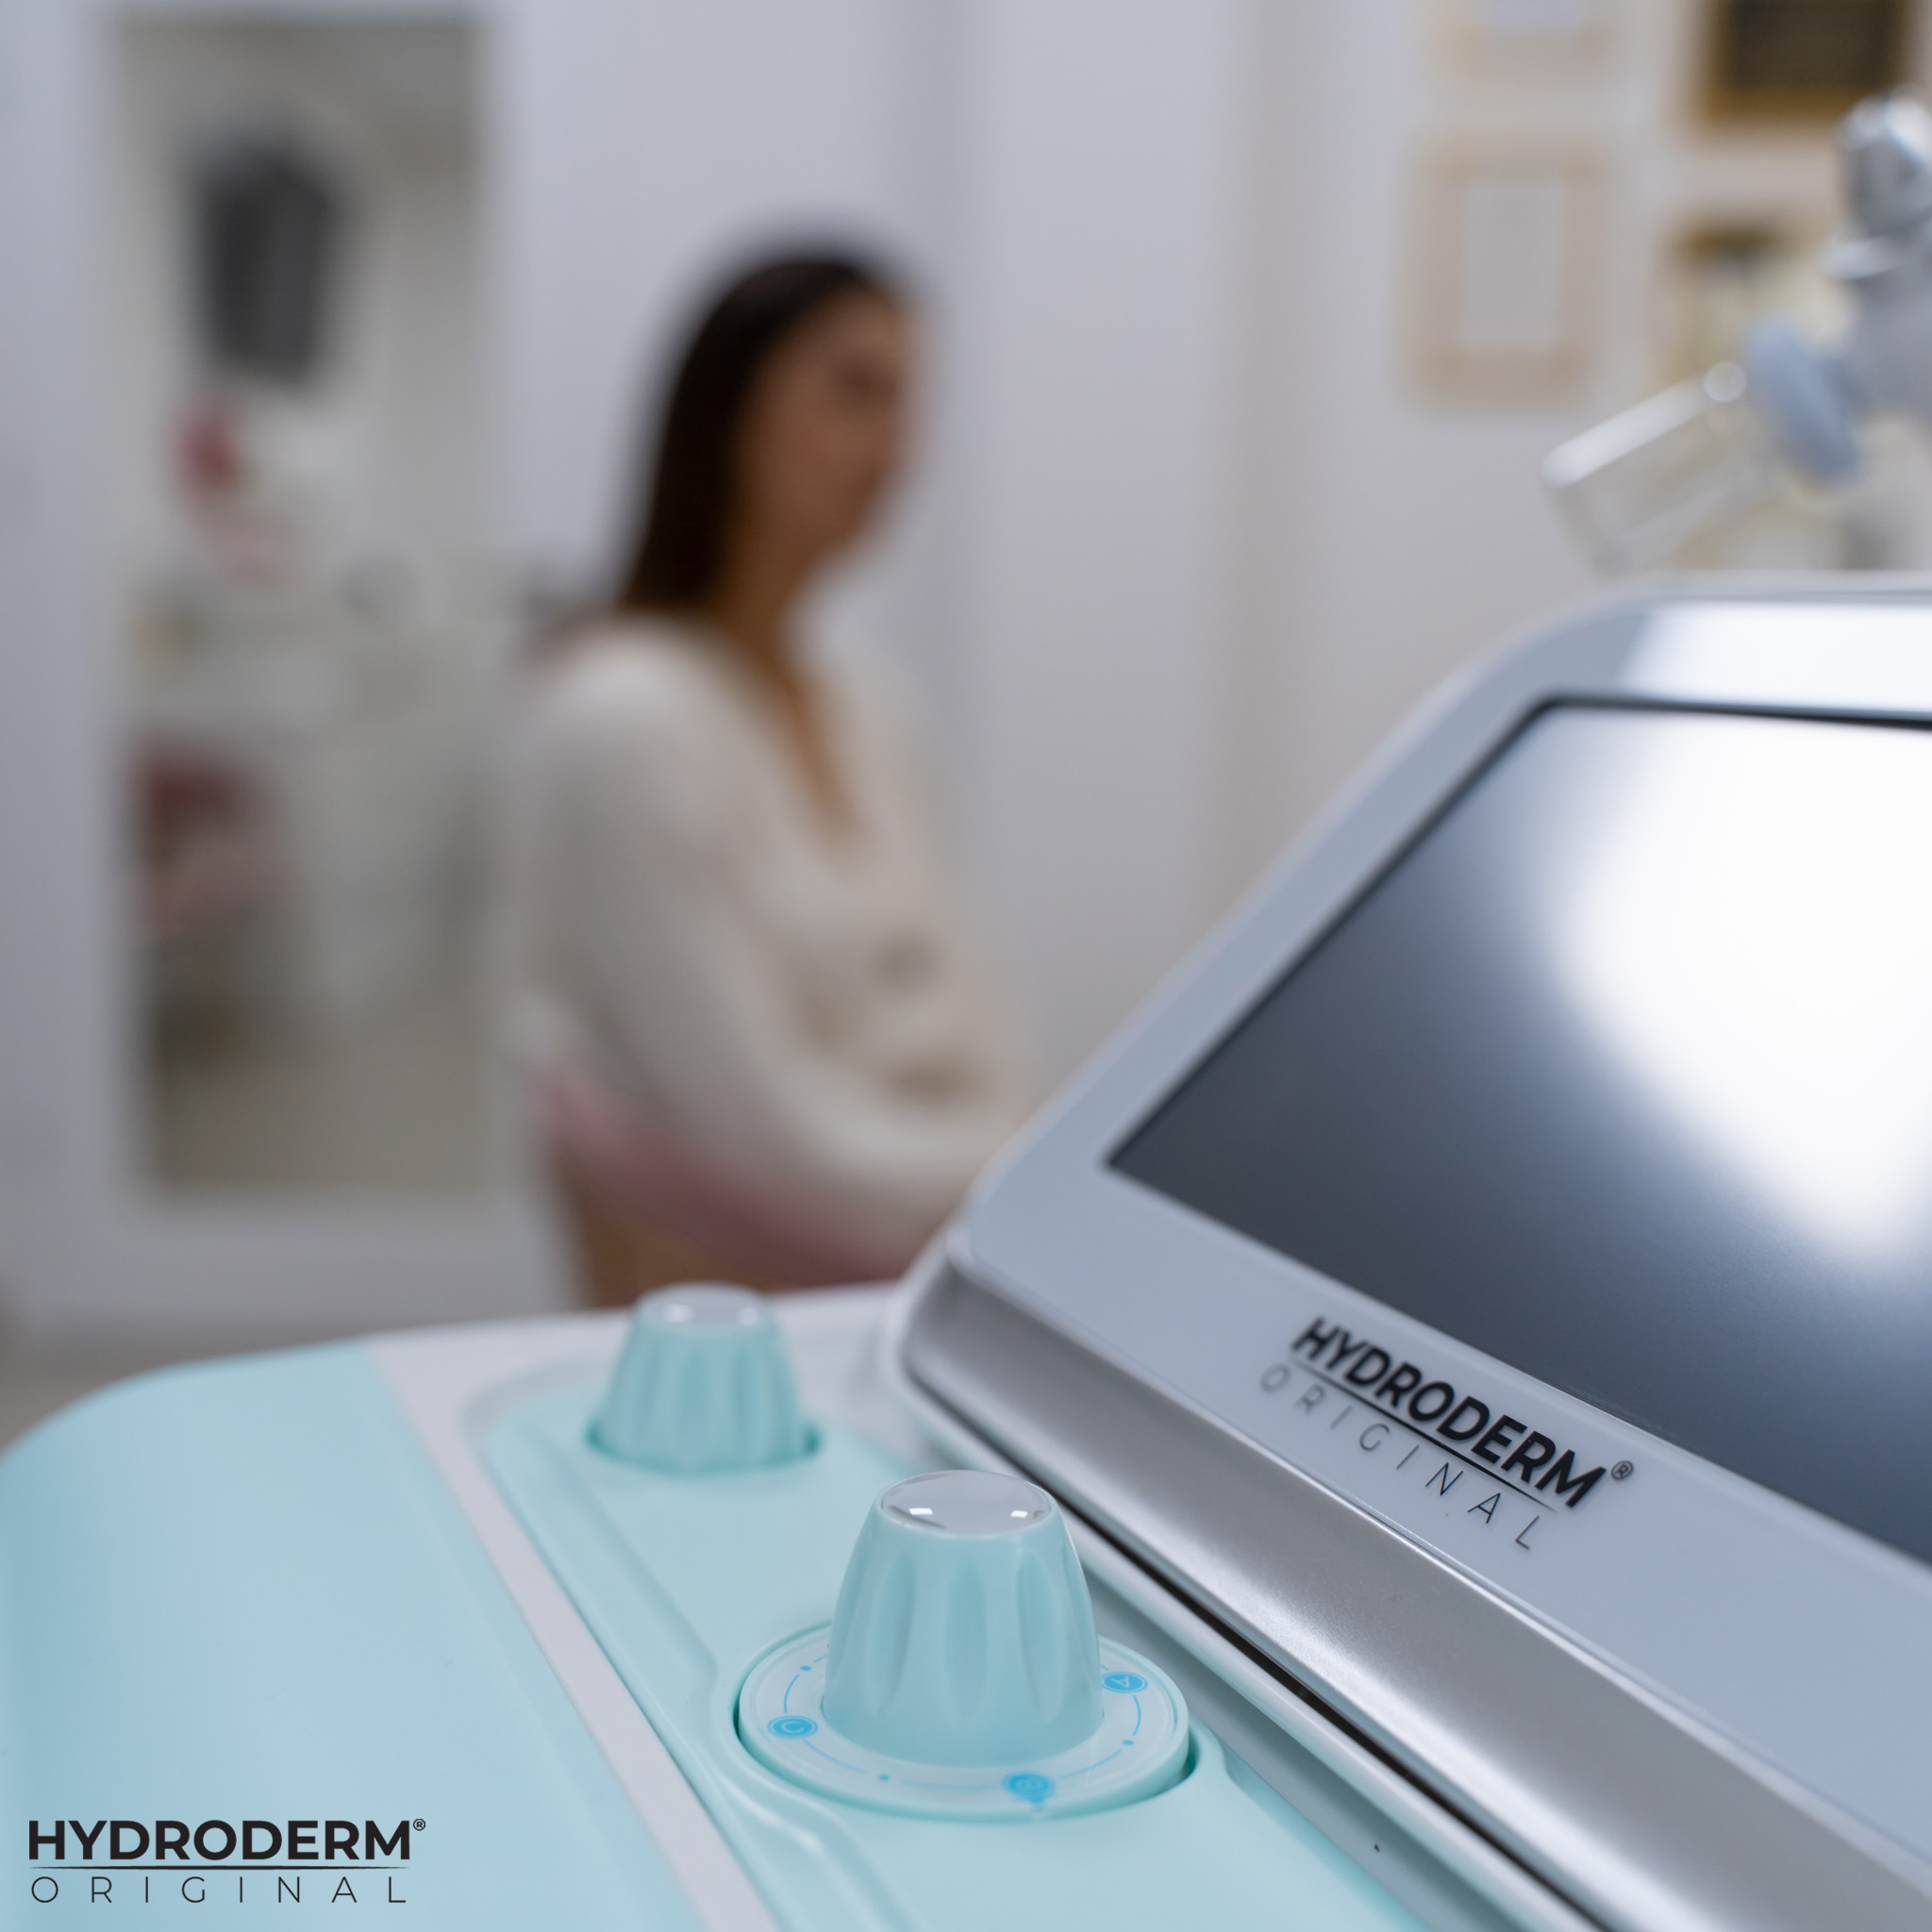 Urządzenie Hydroderm to nowoczesny i innowacyjny kombajn kosmetyczny.